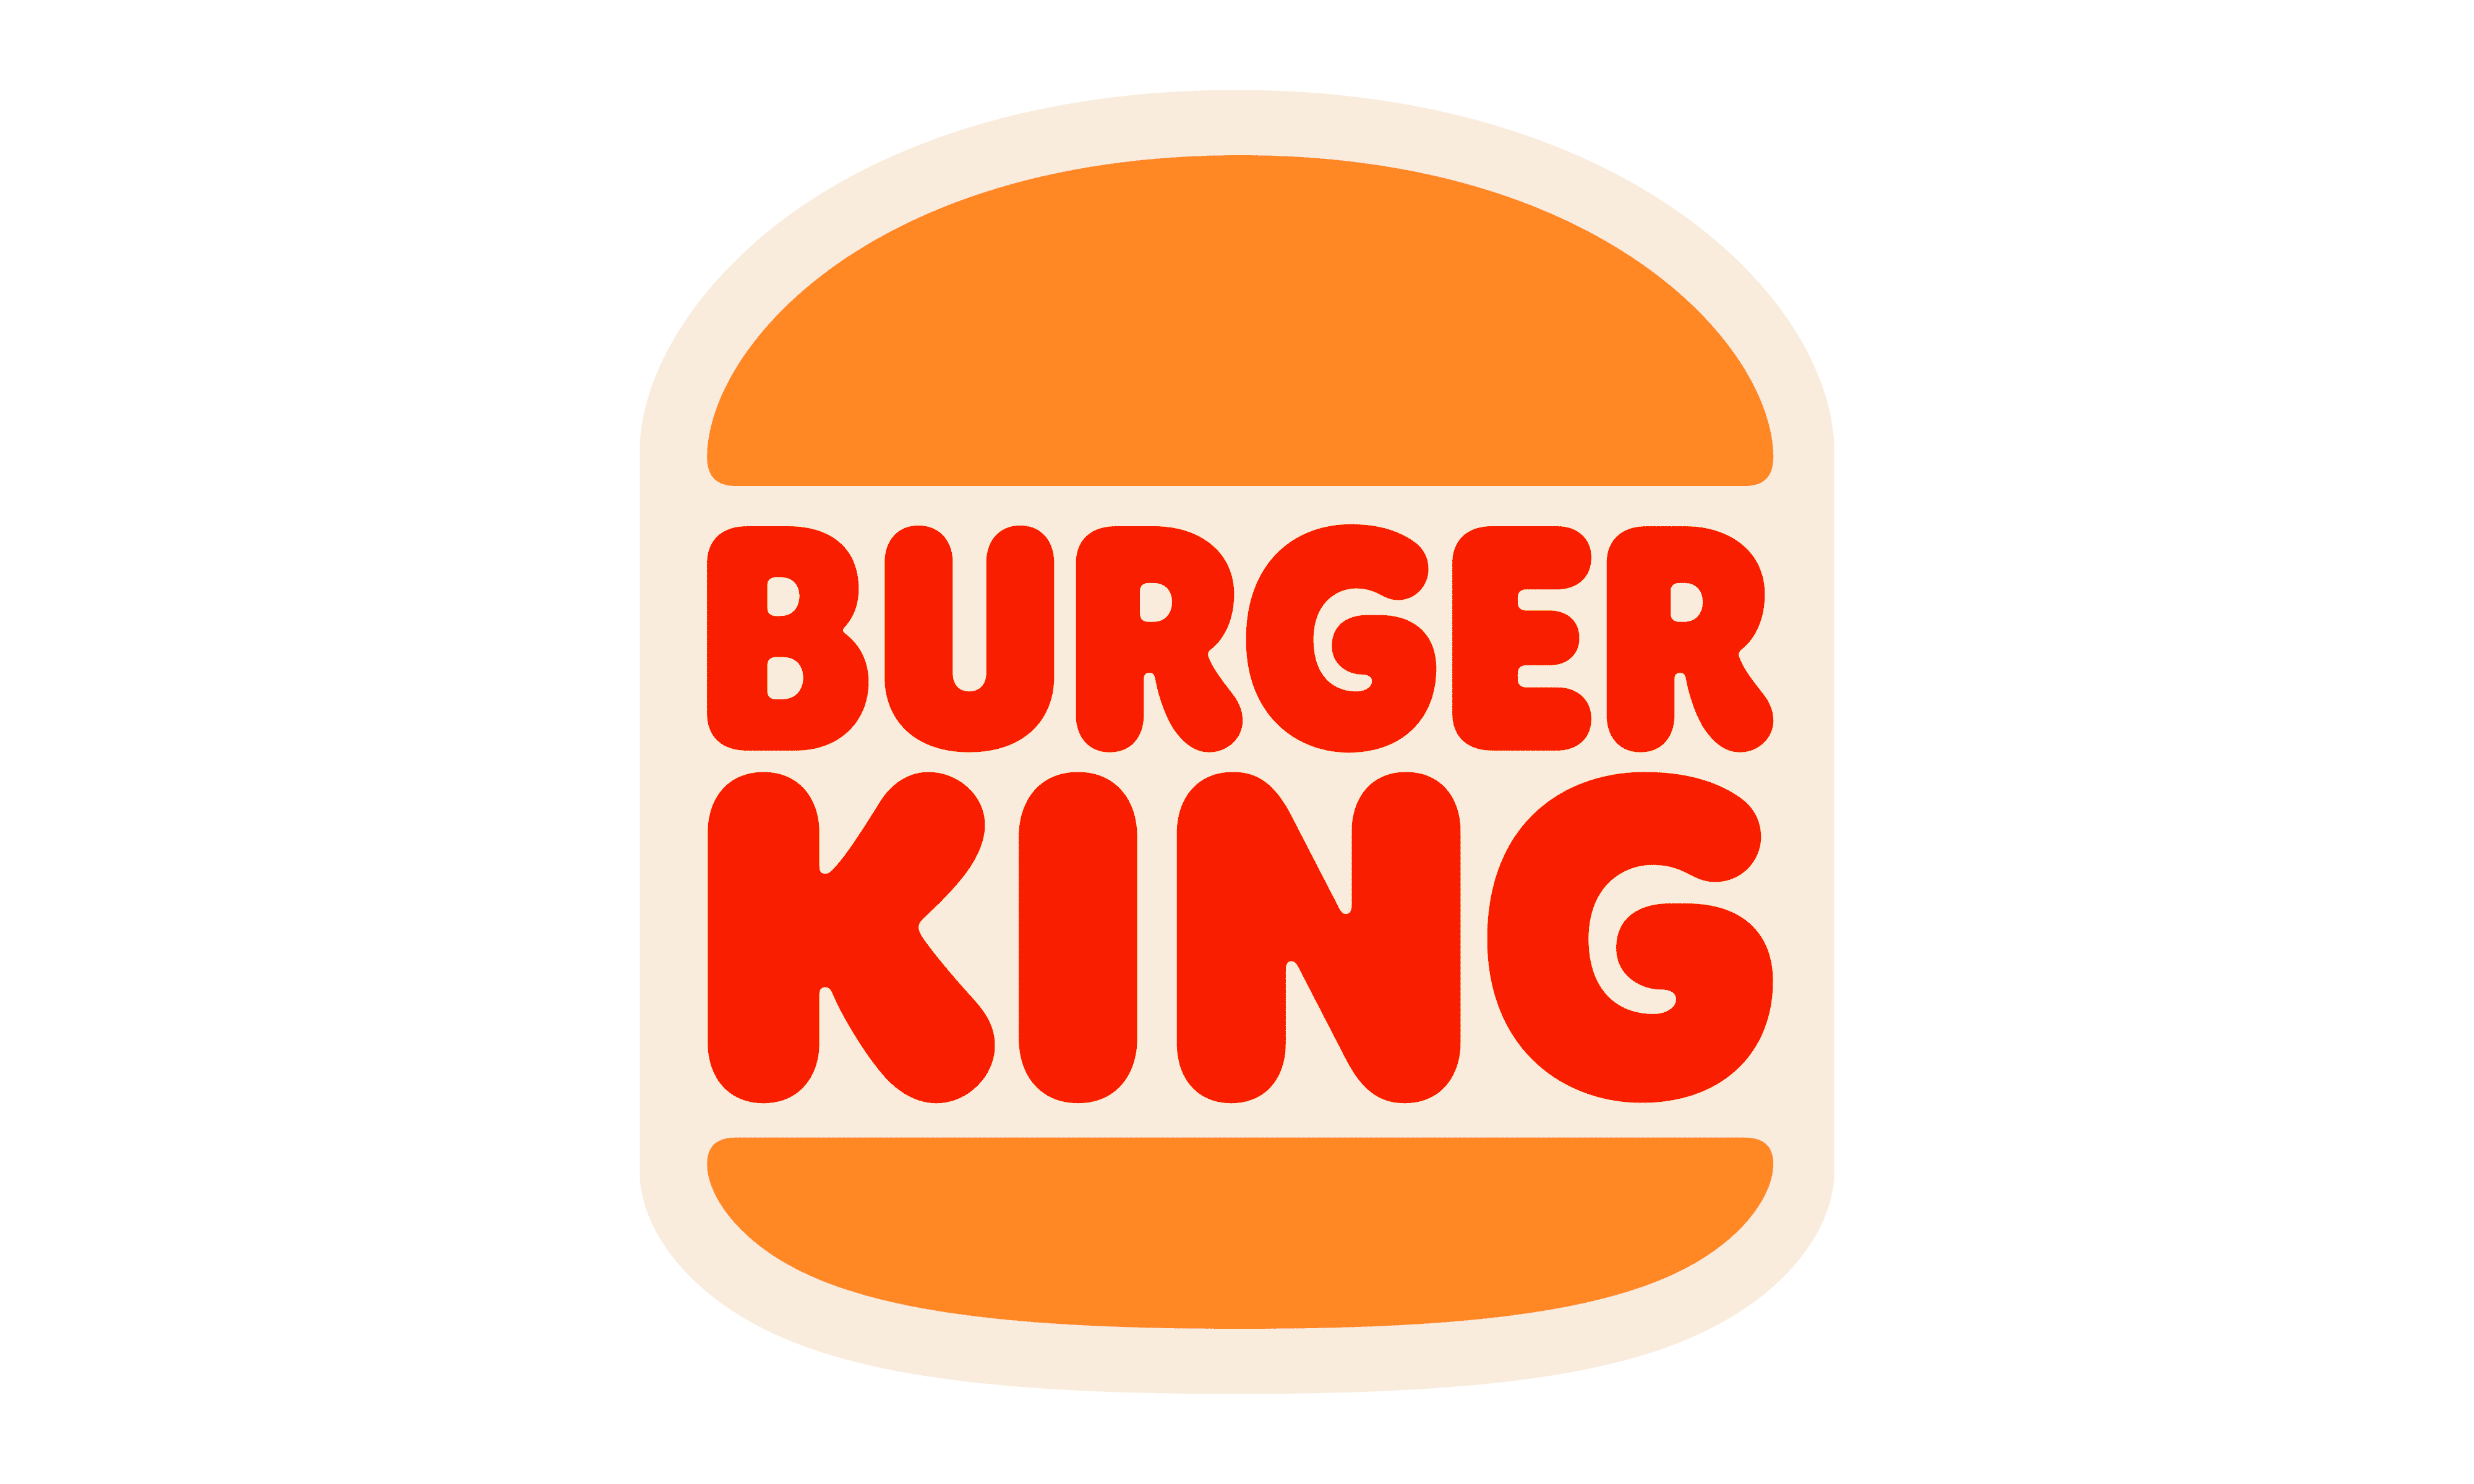 Burger King PNG HD Image